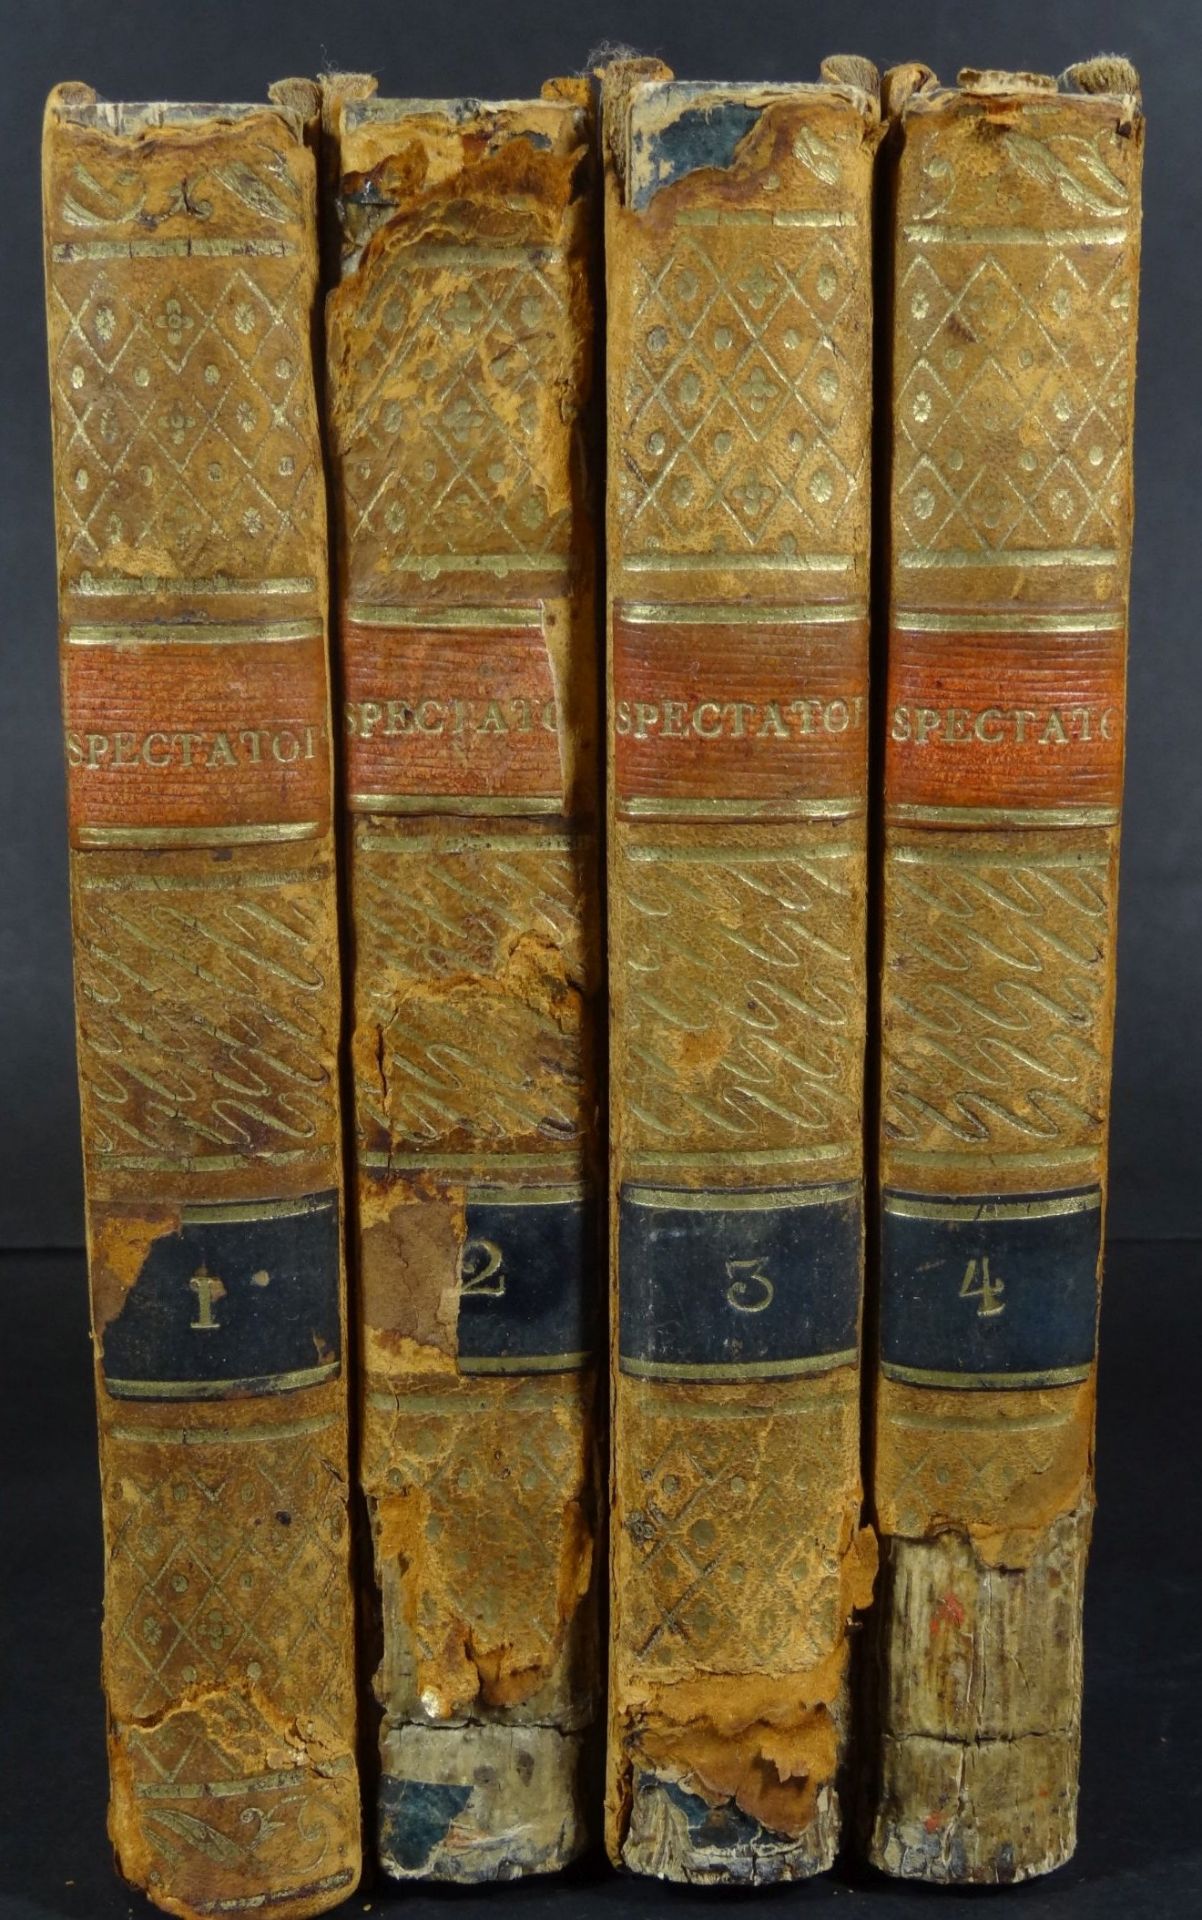 "The spectator", vier Bände 1776, Lederrücken, in englisch, 17x10- - -22.61 % buyer's premium on the